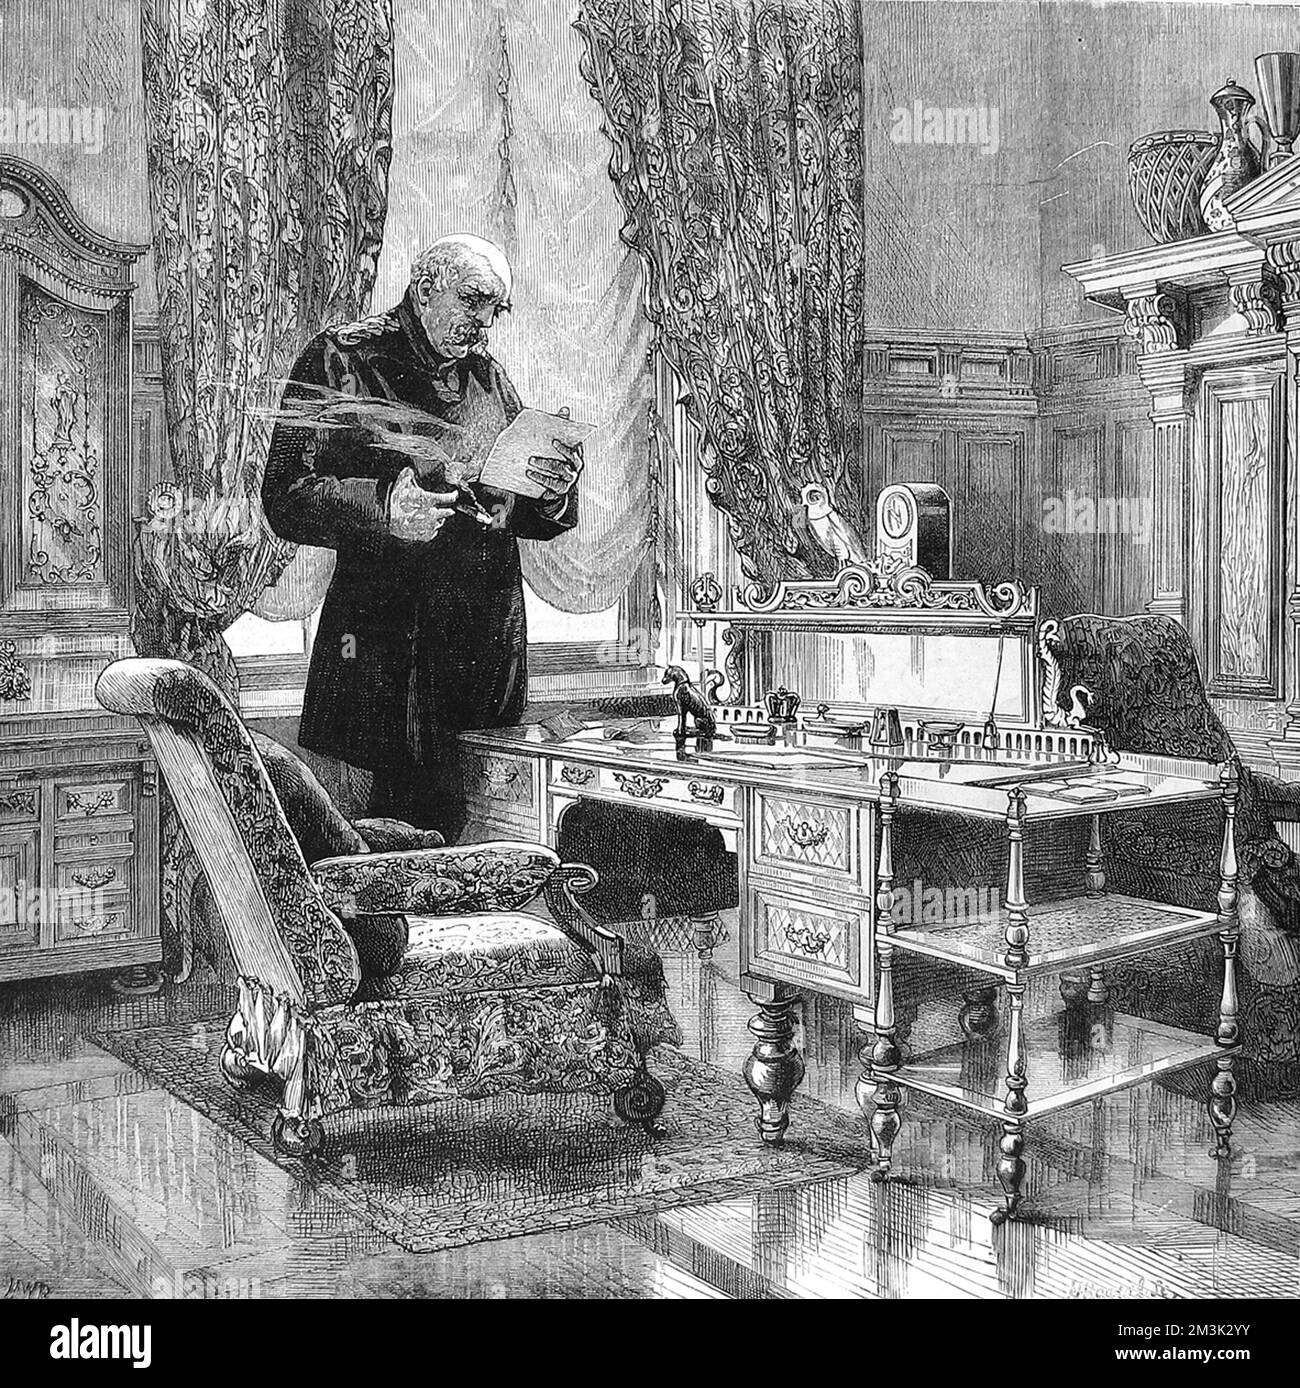 Le prince Otto Edward Leopold von Bismarck, duc de Lauenburg (1815 - 1898), homme d'État prussien-allemand et premier chancelier de l'Empire allemand, photographié dans son étude. 1882 Banque D'Images